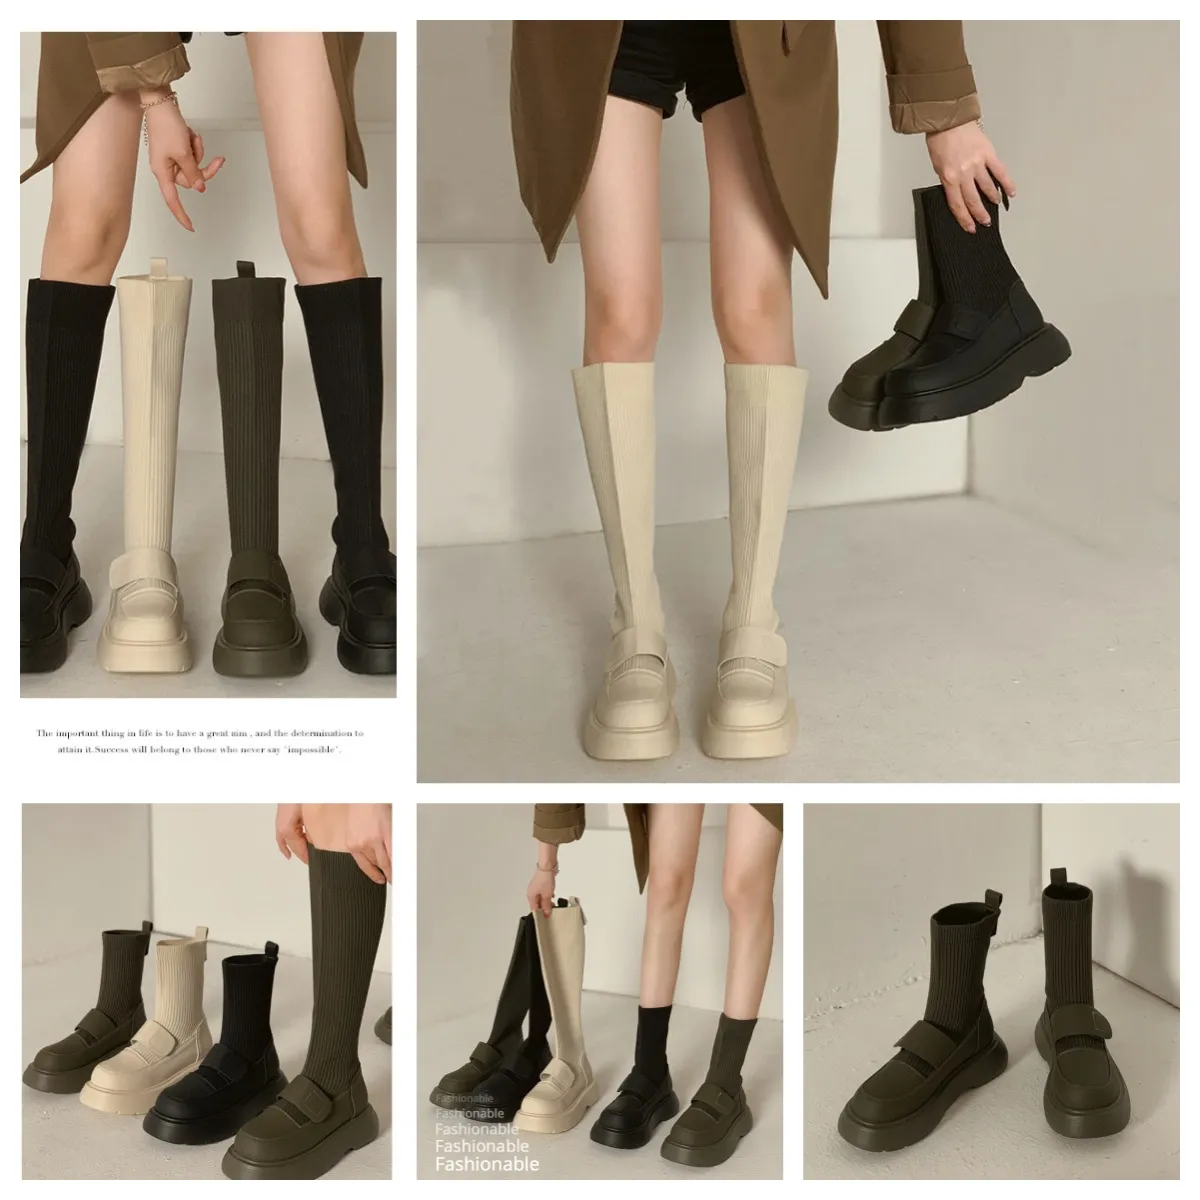 Designers sapatos tênis esporte caminhadas sapatos tornozelos botas de cano alto antiderrapante leve softy mulheres gai 35-48 preto clássico confortável